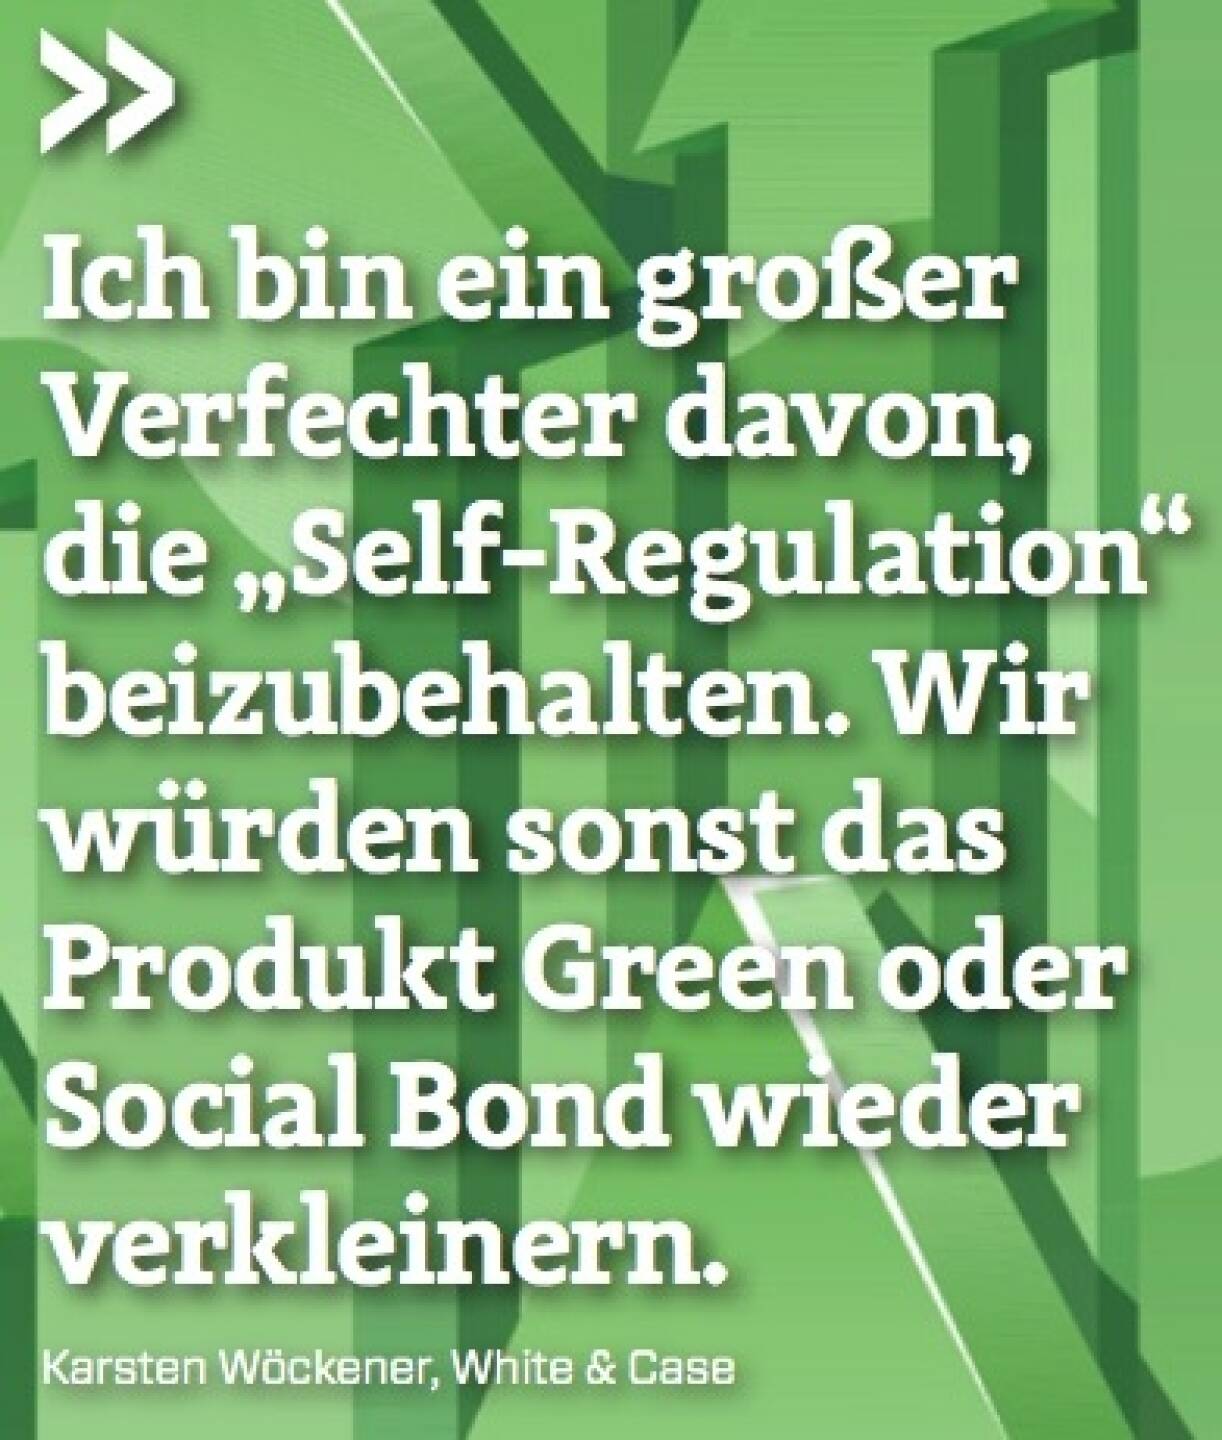 Ich bin ein großer Verfechter davon, die „Self-Regulation“ beizubehalten. Wir würden sonst das Produkt Green oder Social Bond wieder verkleinern. - Karsten Wöckener (White & Case)